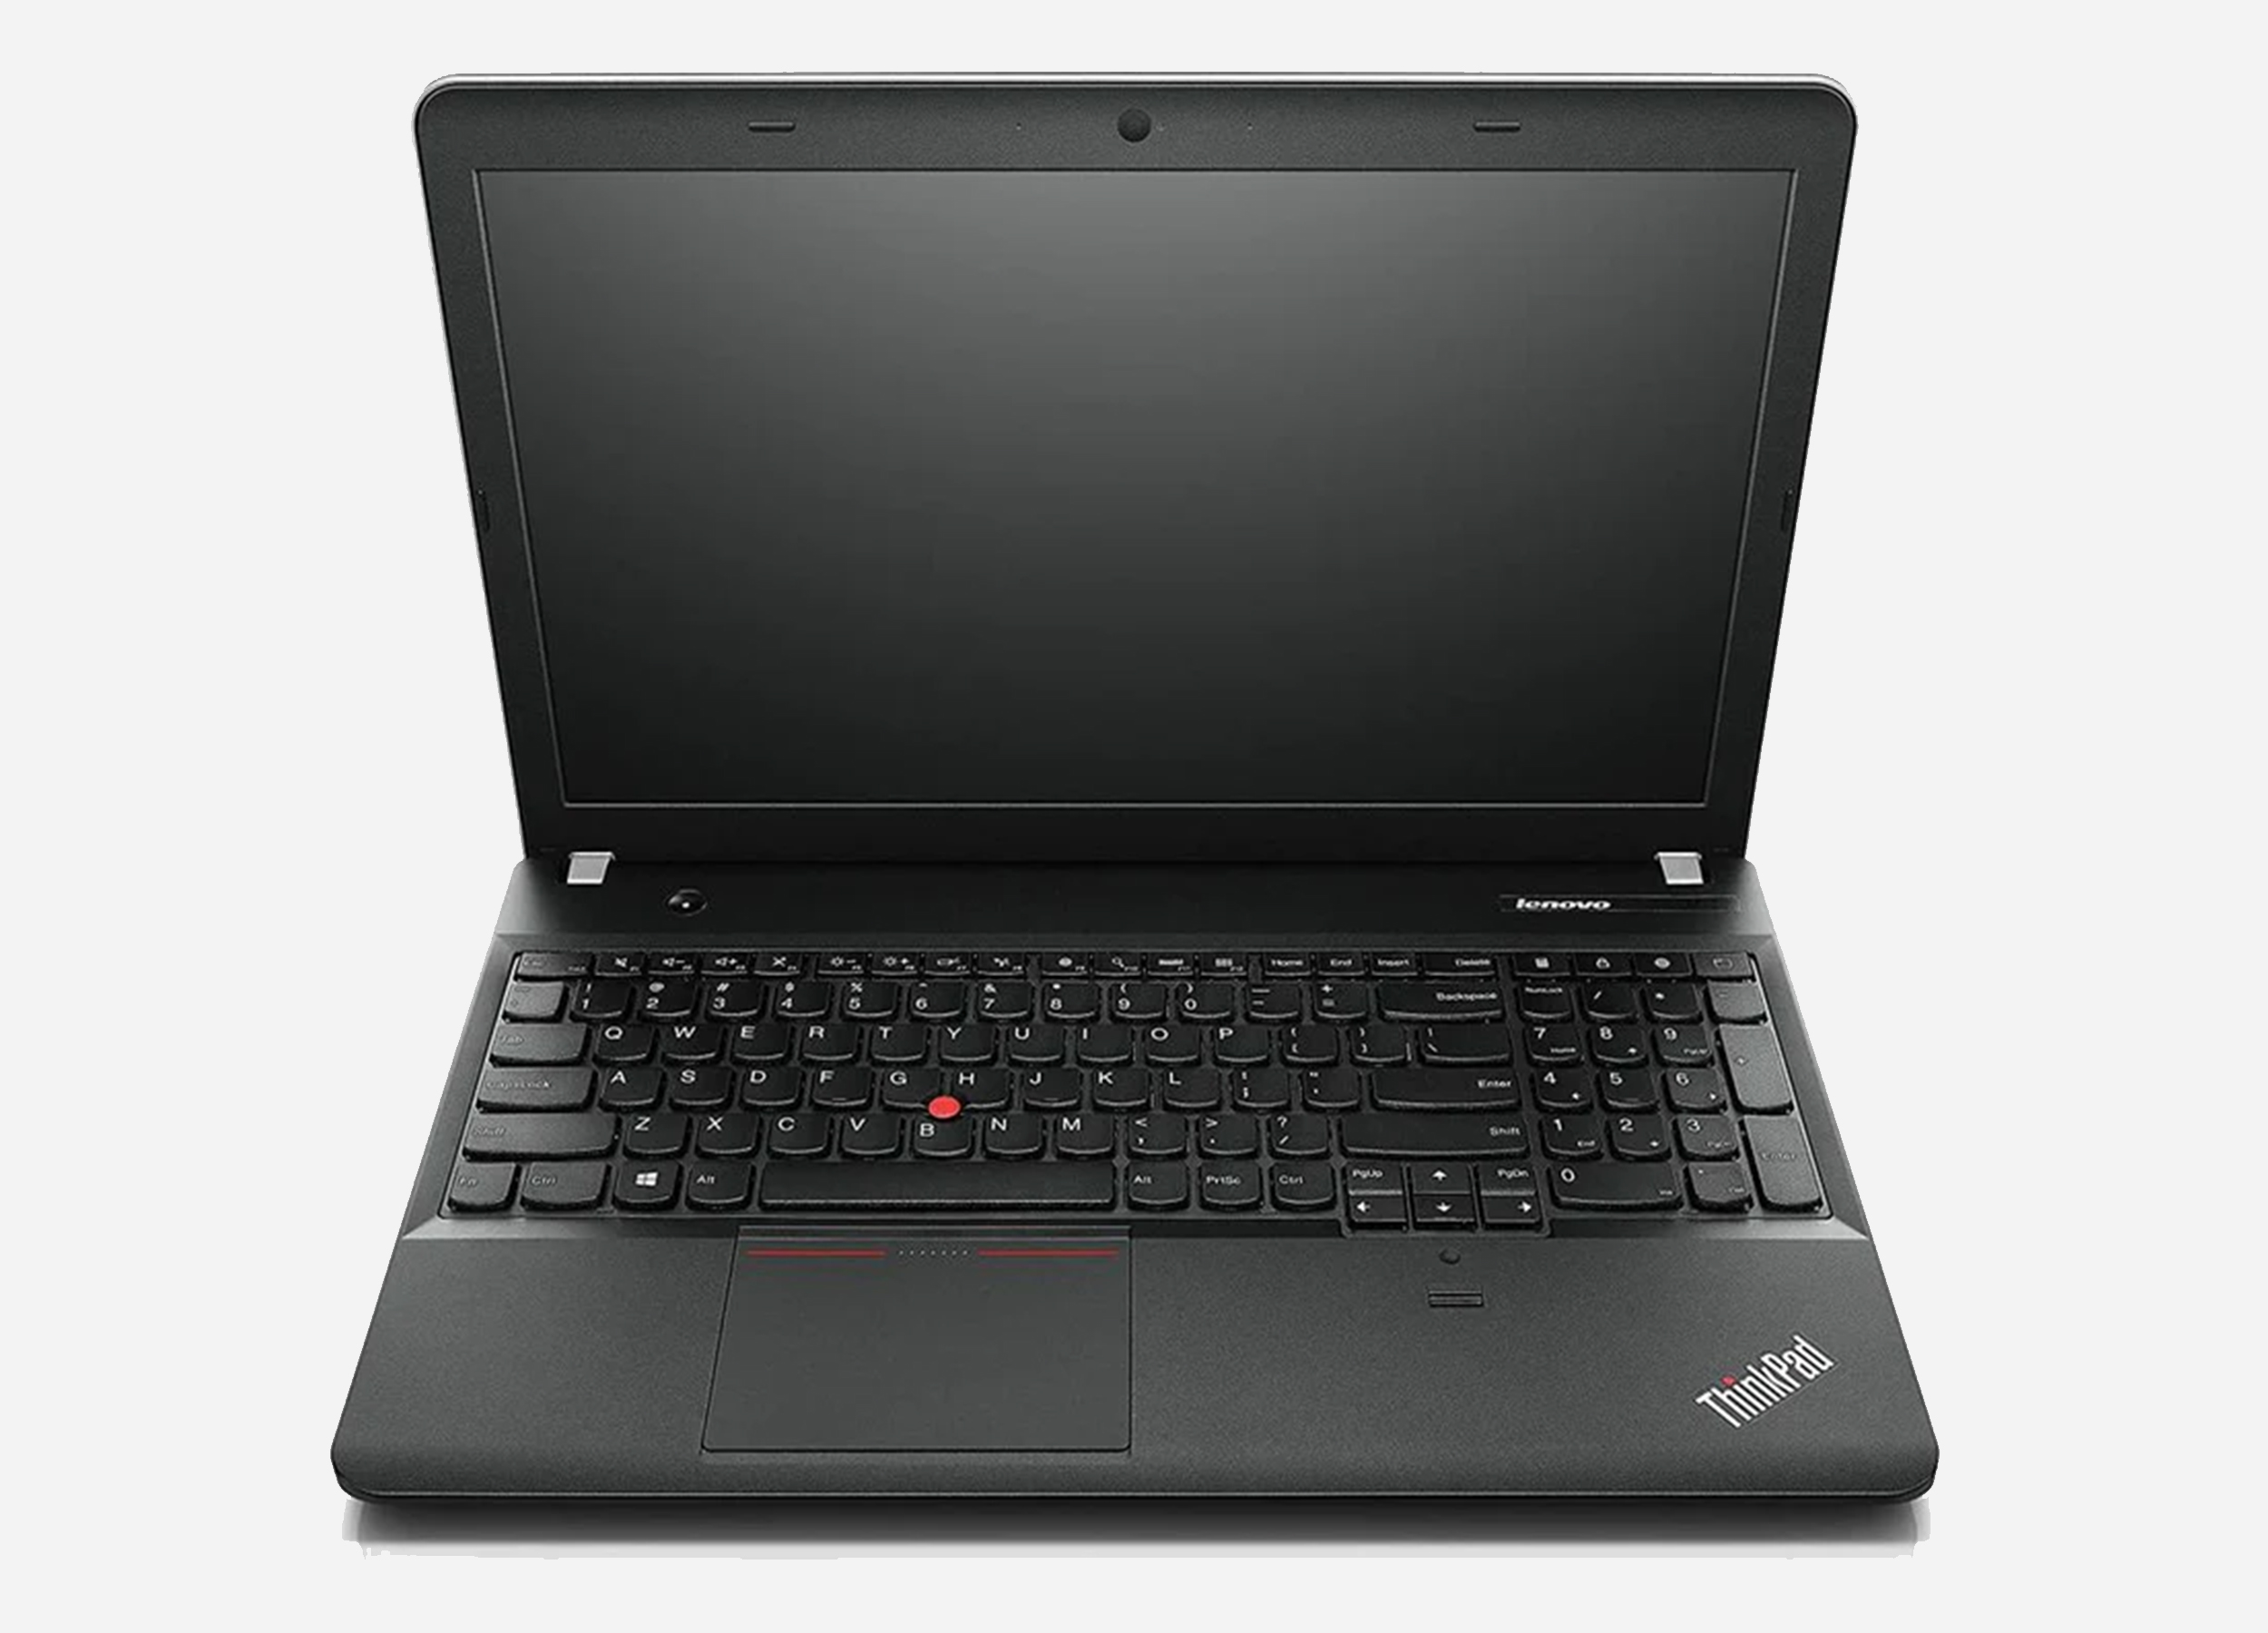 Lenovo ThinkPad E540 i5 4200M Notebook